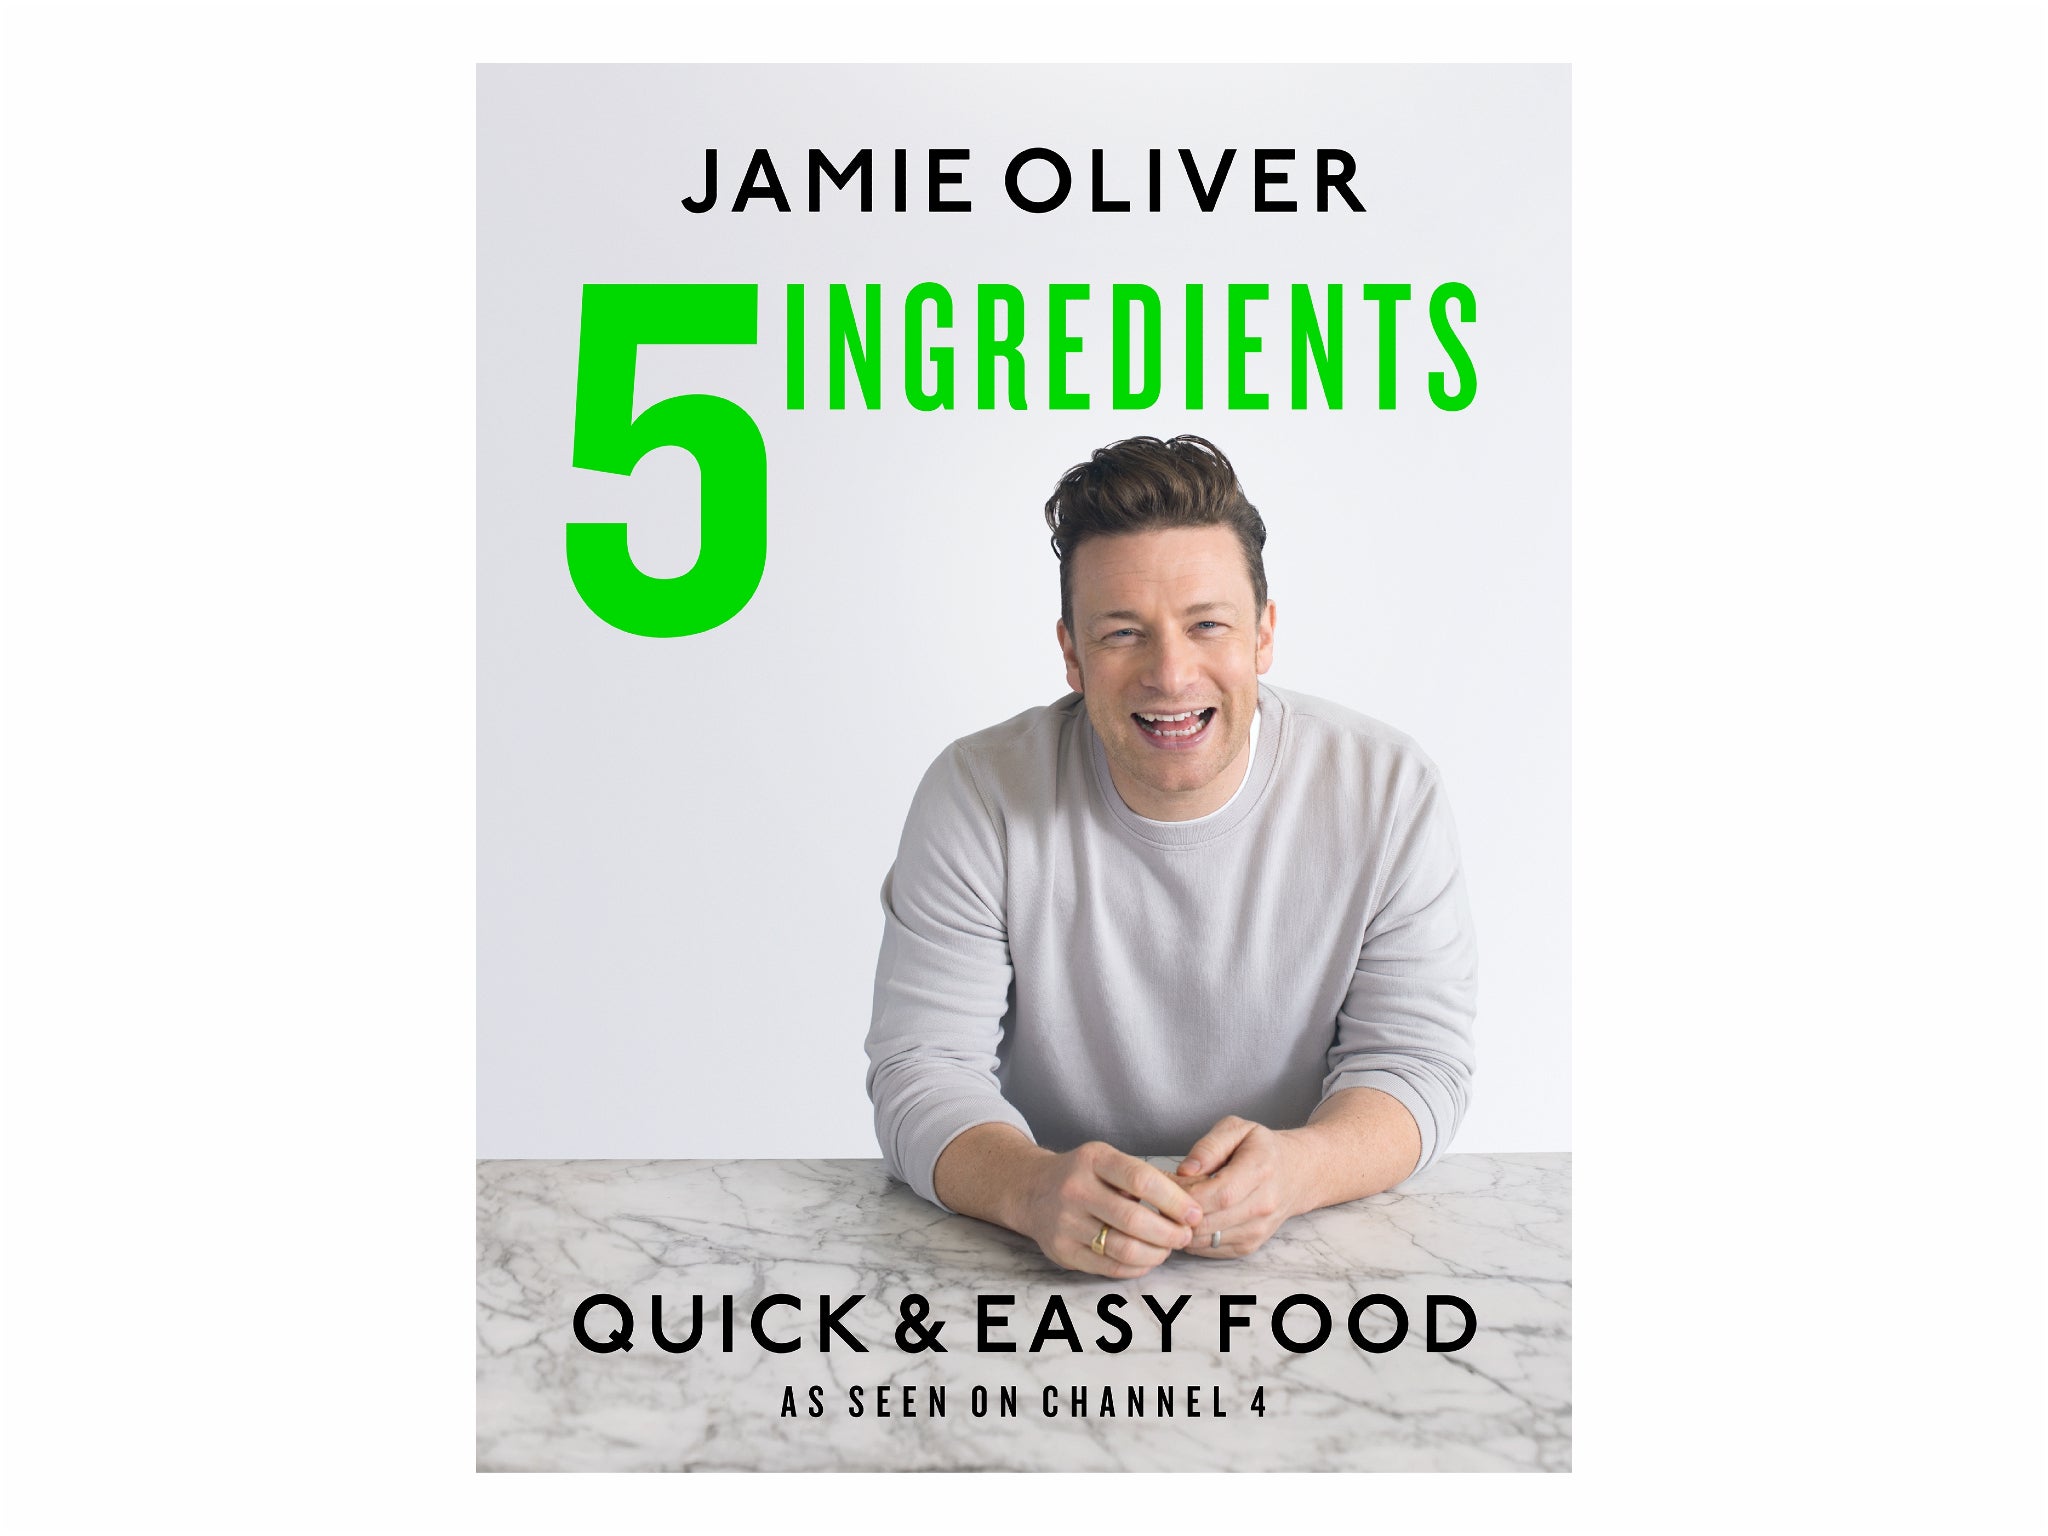 jamie oliver 5 ingredients indybest.jpg